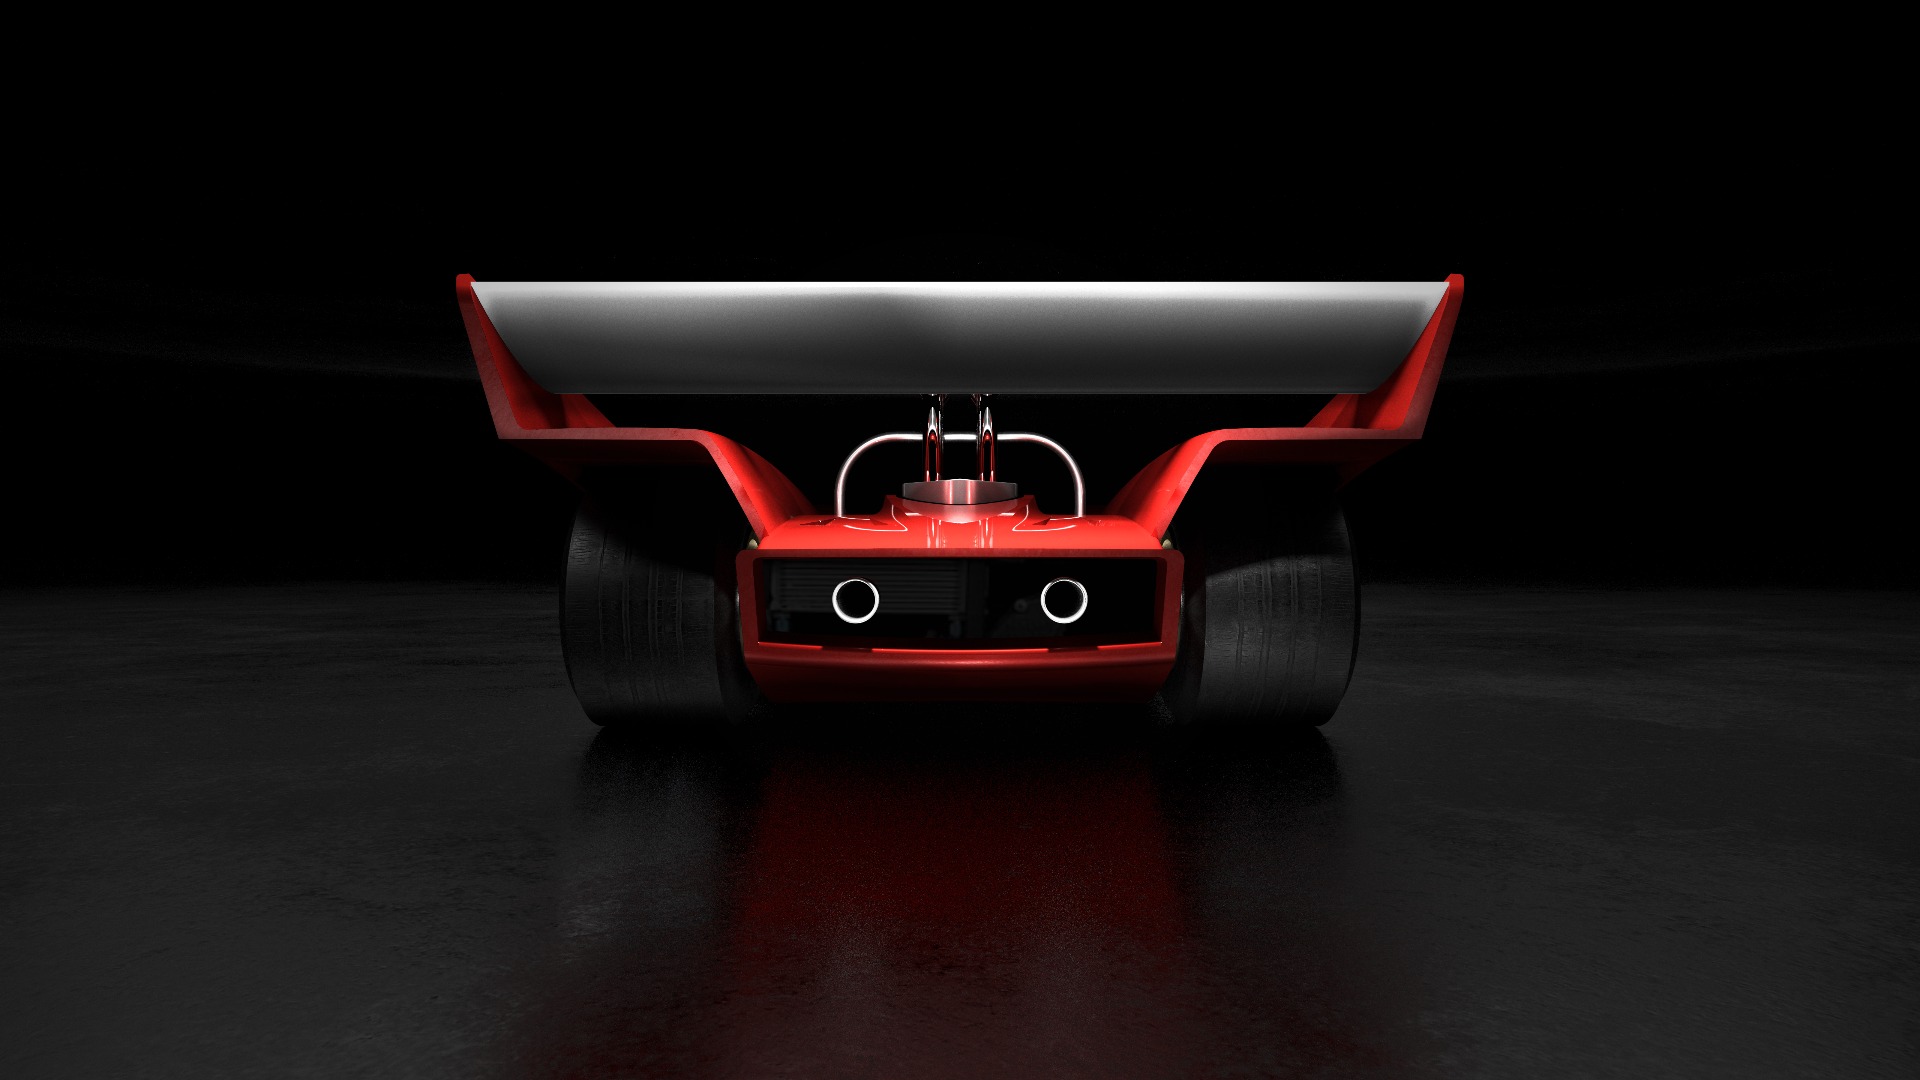 Med dette bildet ønsker Lotus å vekke oppmerksomhet for sine nye Halo-biler.